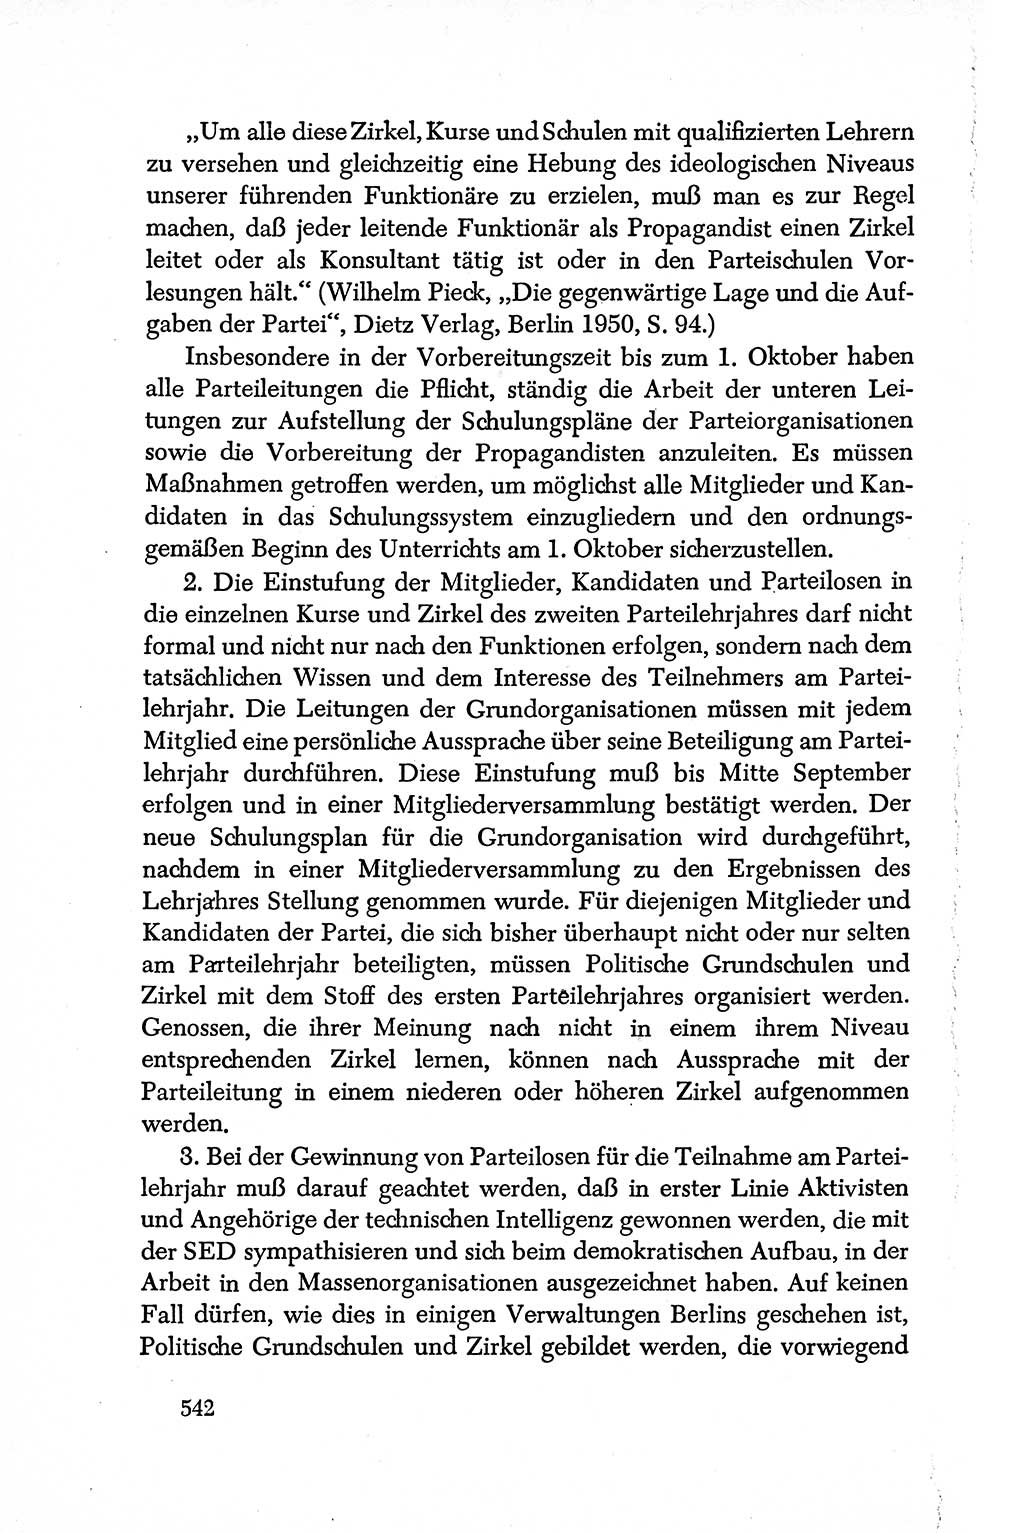 Dokumente der Sozialistischen Einheitspartei Deutschlands (SED) [Deutsche Demokratische Republik (DDR)] 1950-1952, Seite 542 (Dok. SED DDR 1950-1952, S. 542)